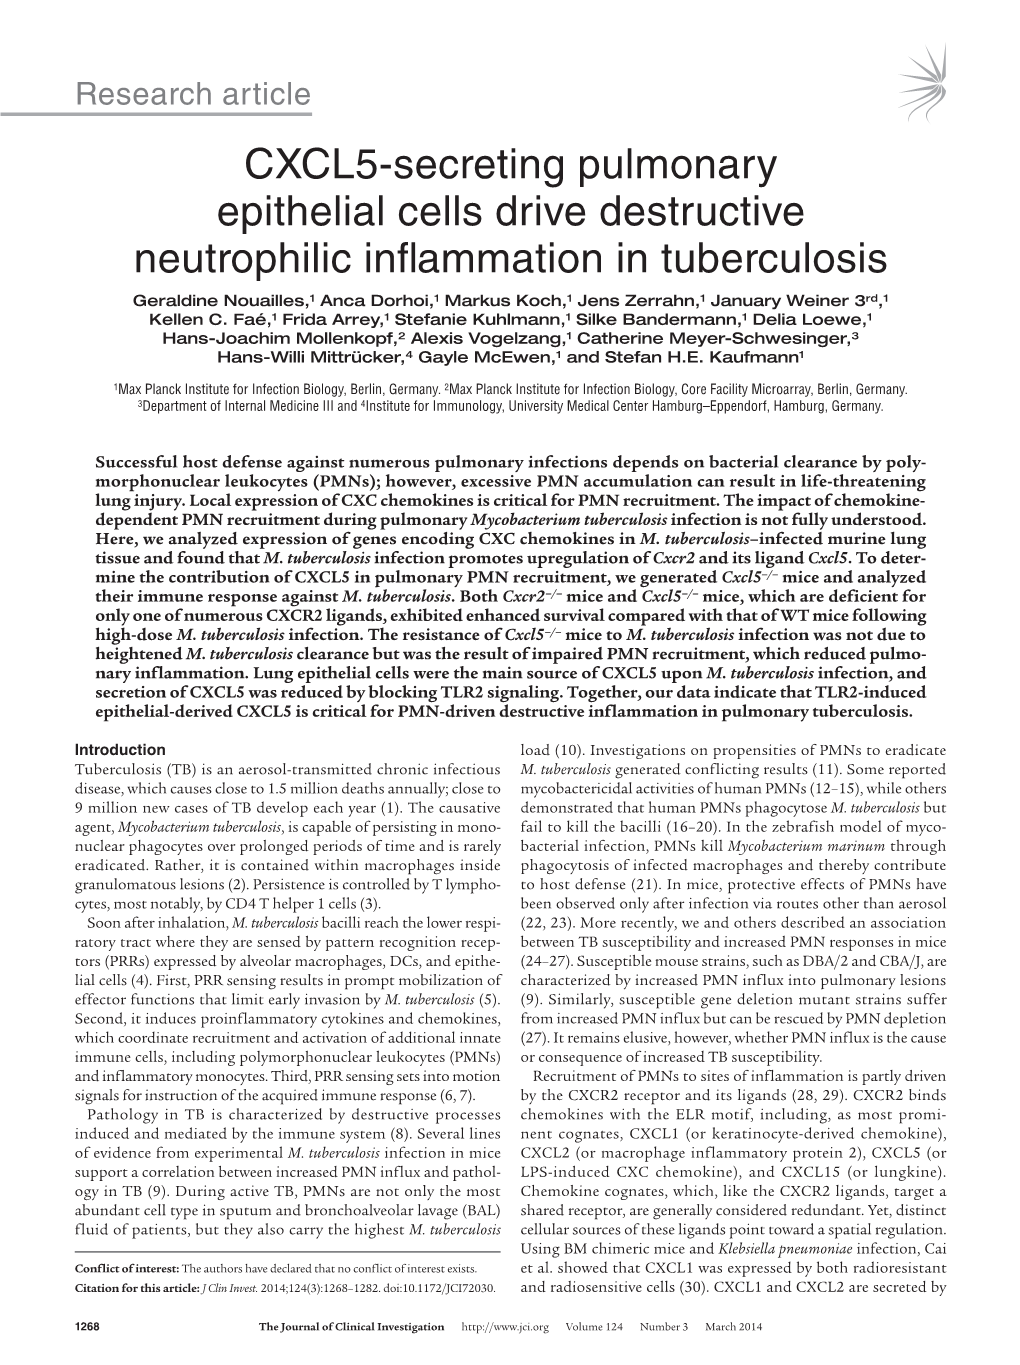 CXCL5-Secreting Pulmonary Epithelial Cells Drive Destructive Neutrophilic